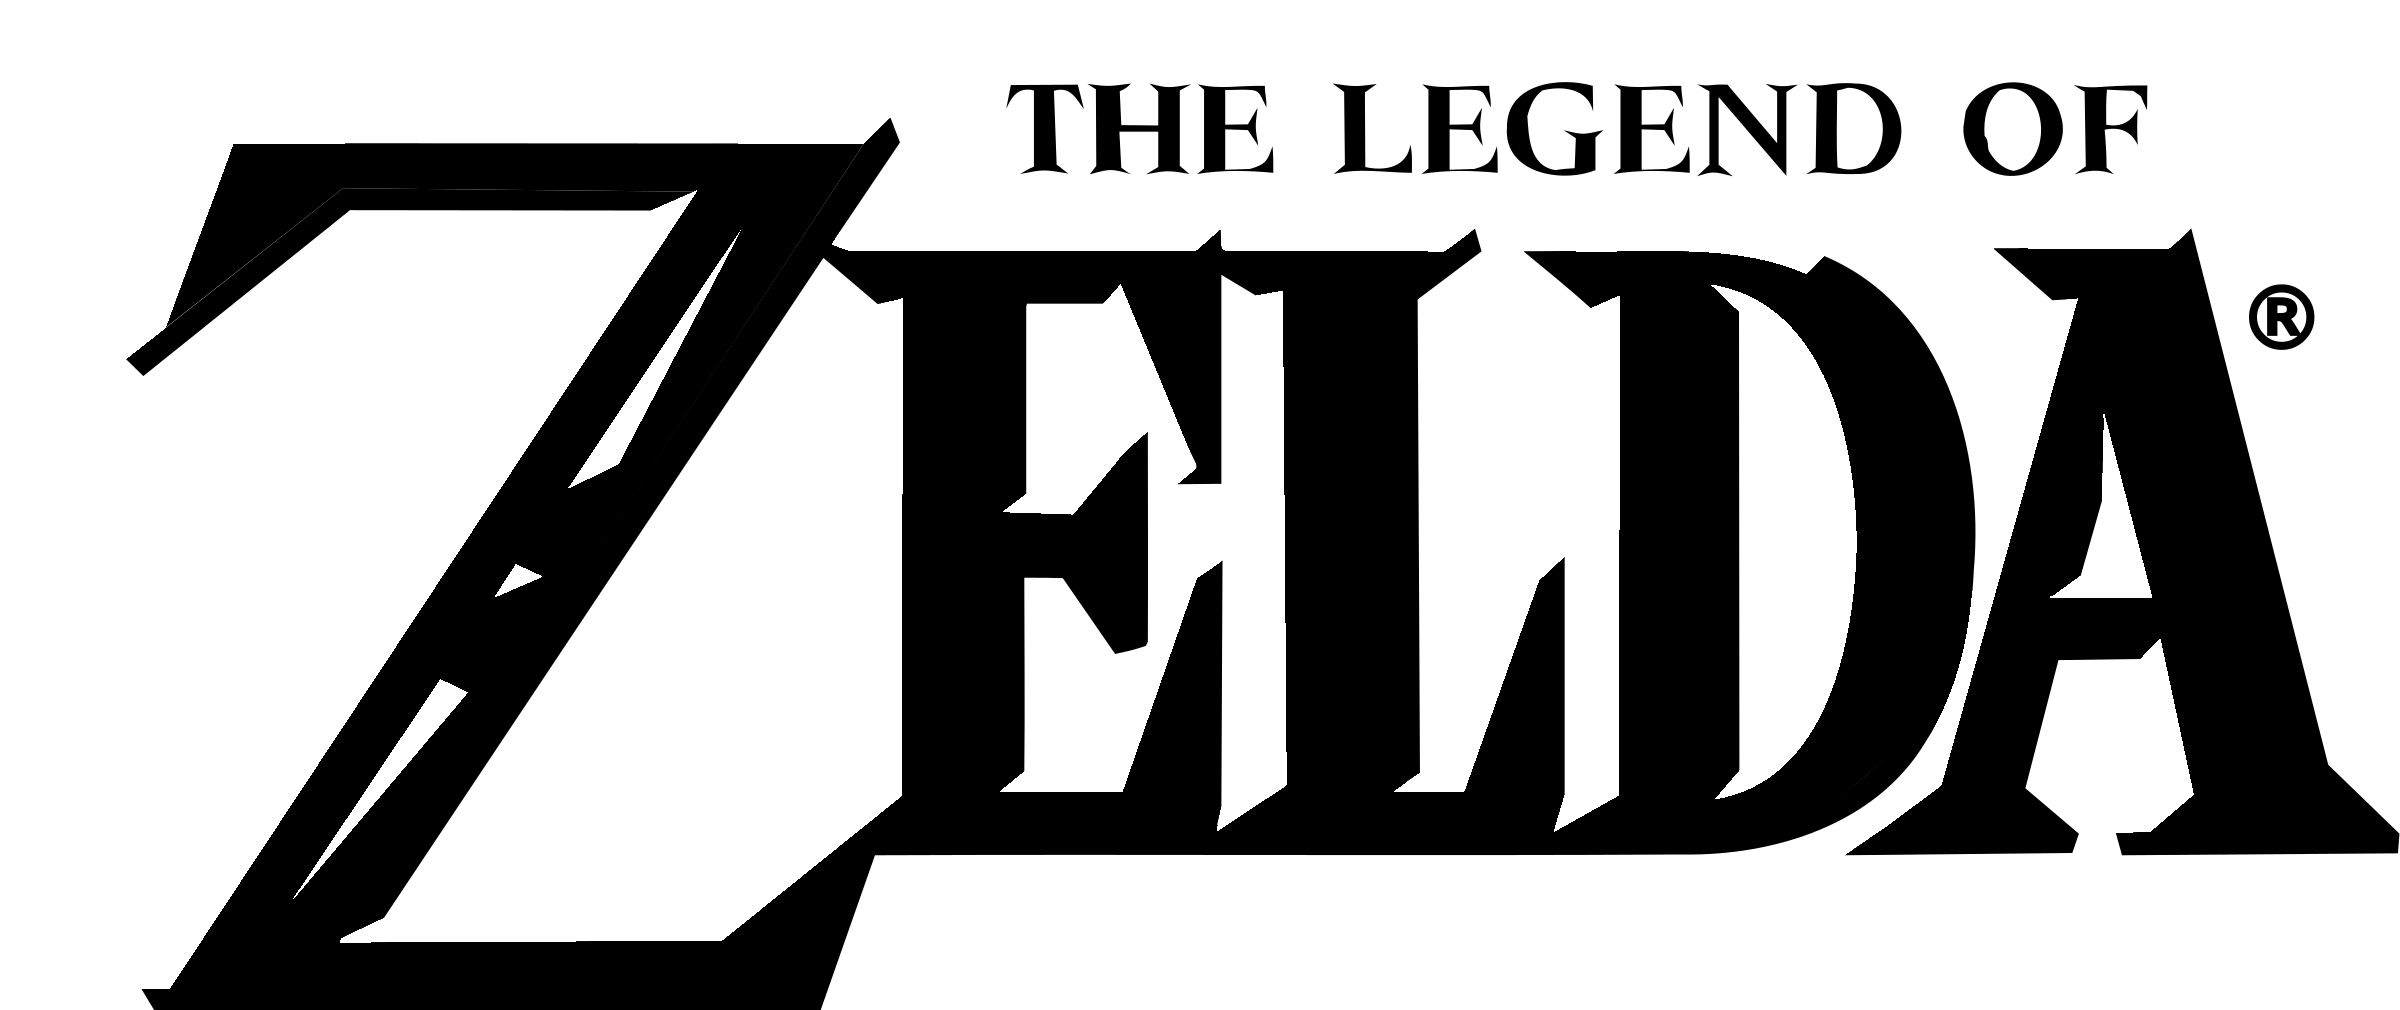 Zelda Logo PNG Transparent & SVG Vector.